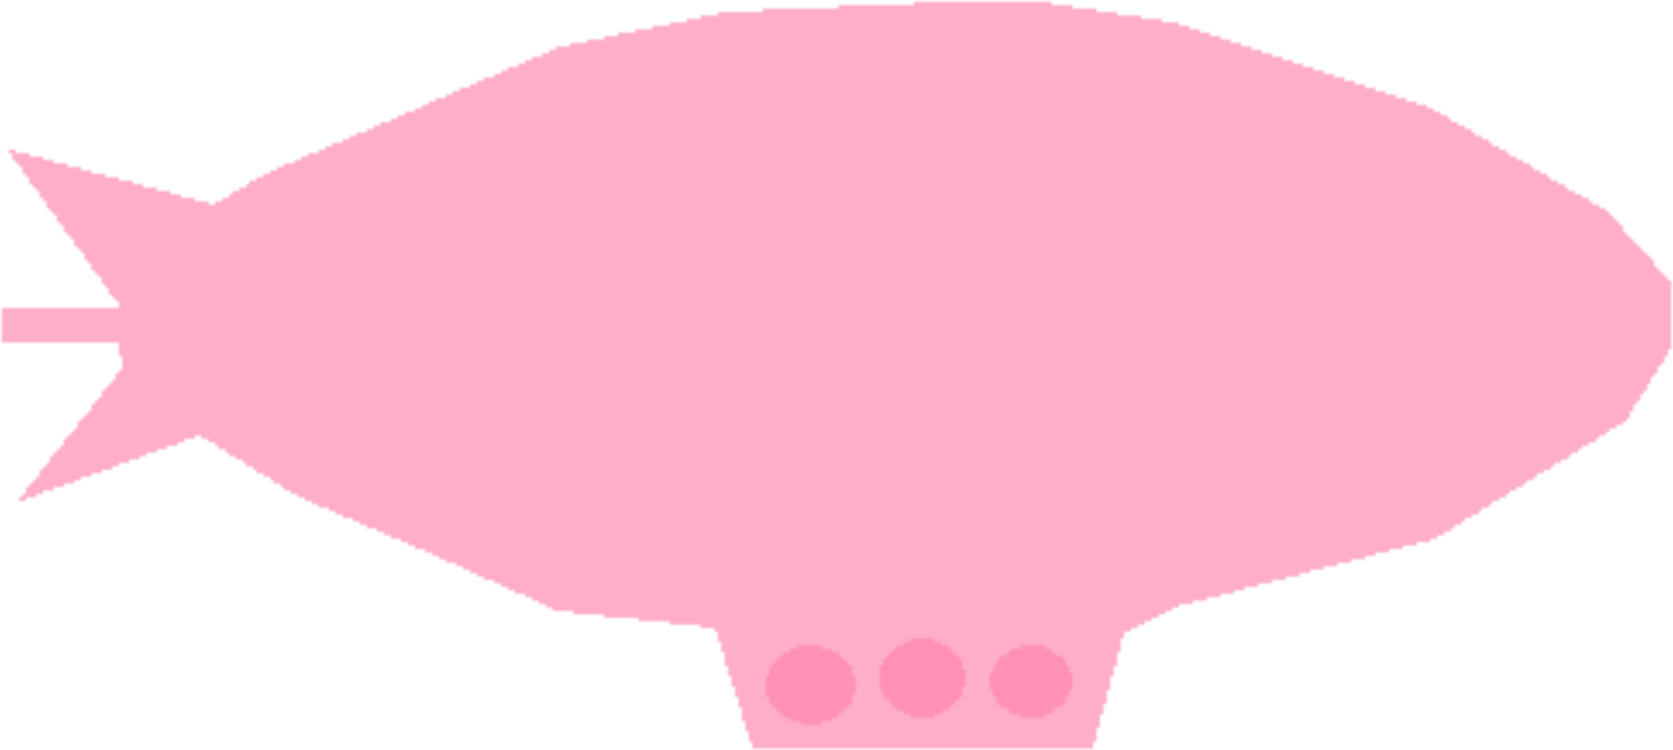 Pink,Magenta,Circle